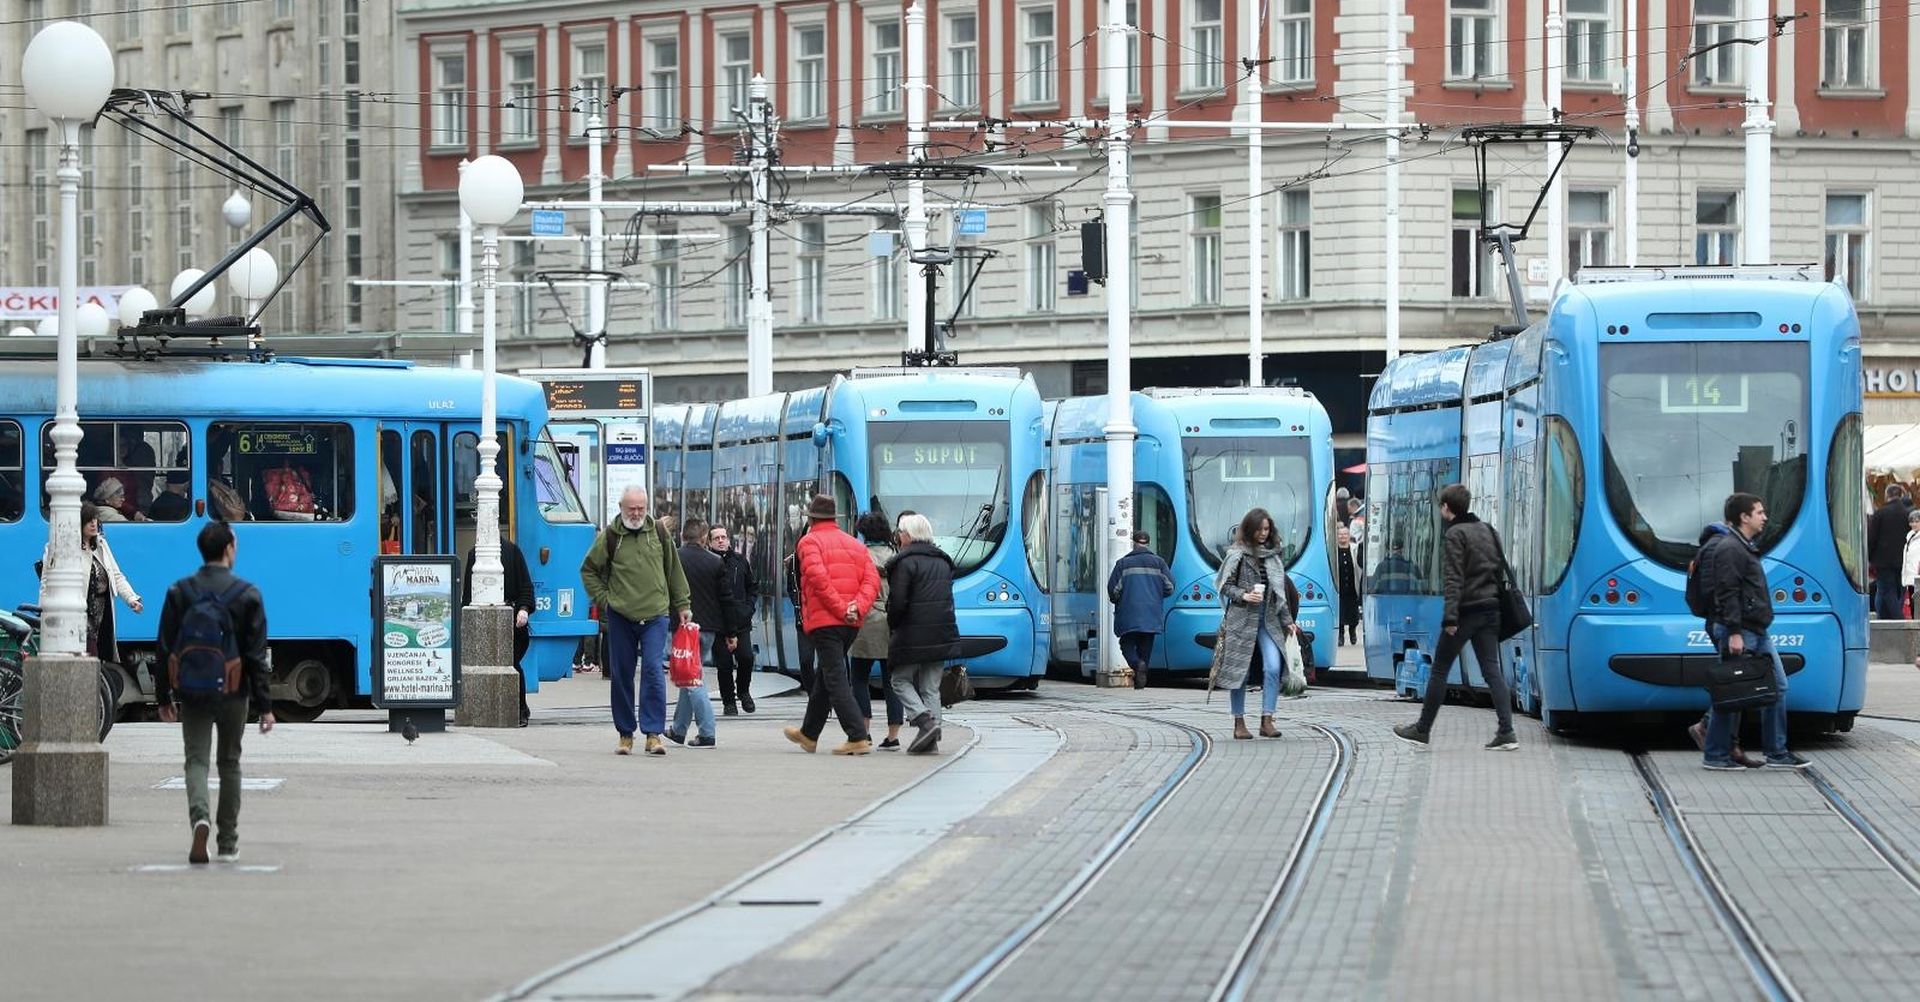 Zagrebački električni tramvaj 13.03.2019., Zagreb - Zagrebacki elektricni tramvaj  Photo: Sanjin Strukic/PIXSELL